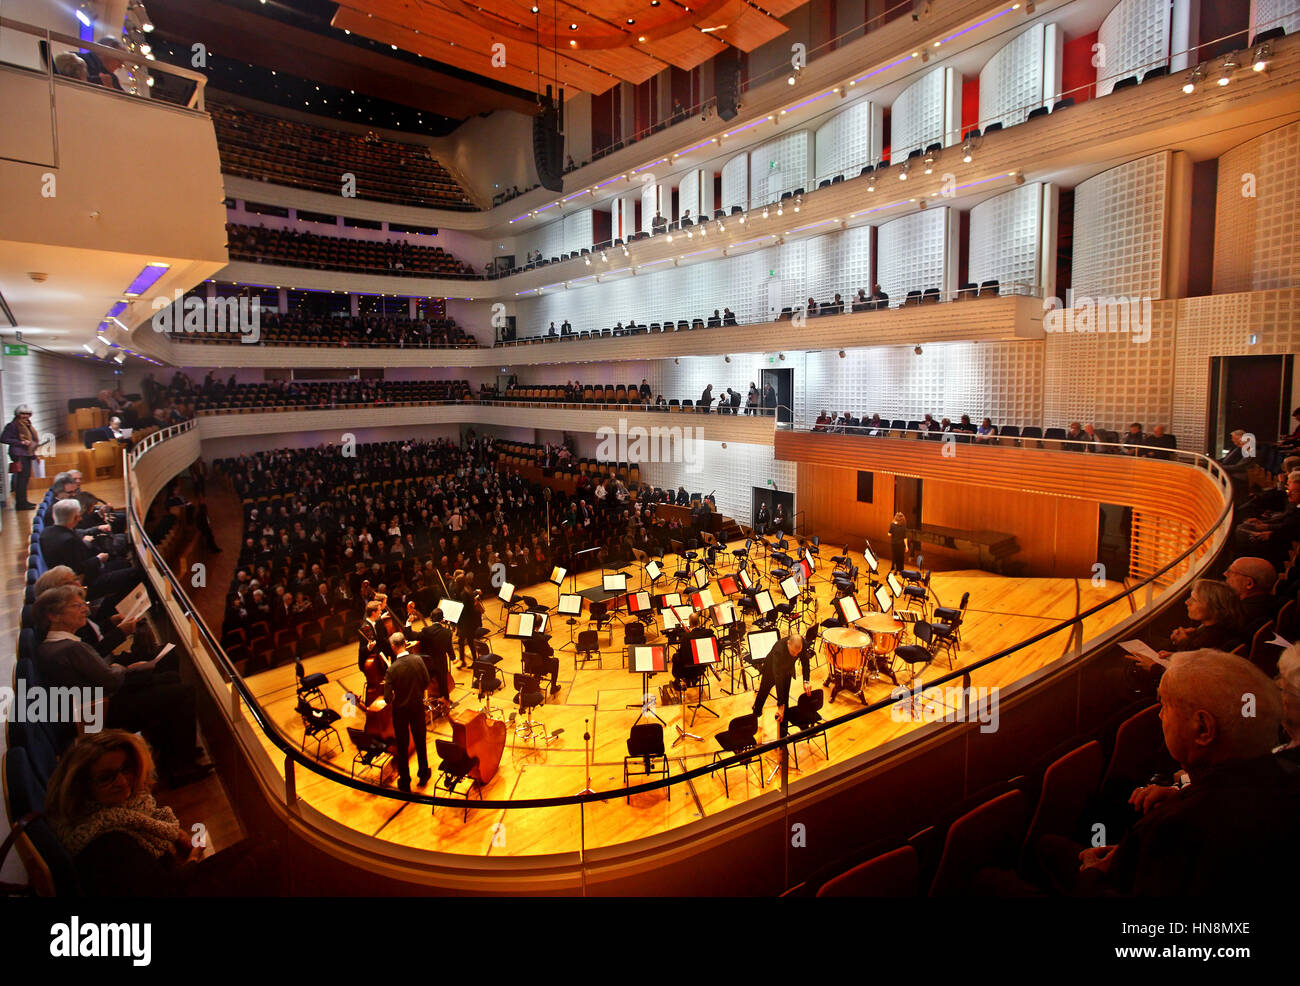 The concert hall in the KKL (Kultur- und Kongresszentrum Luzern), Lucerne, Switzerland. Stock Photo